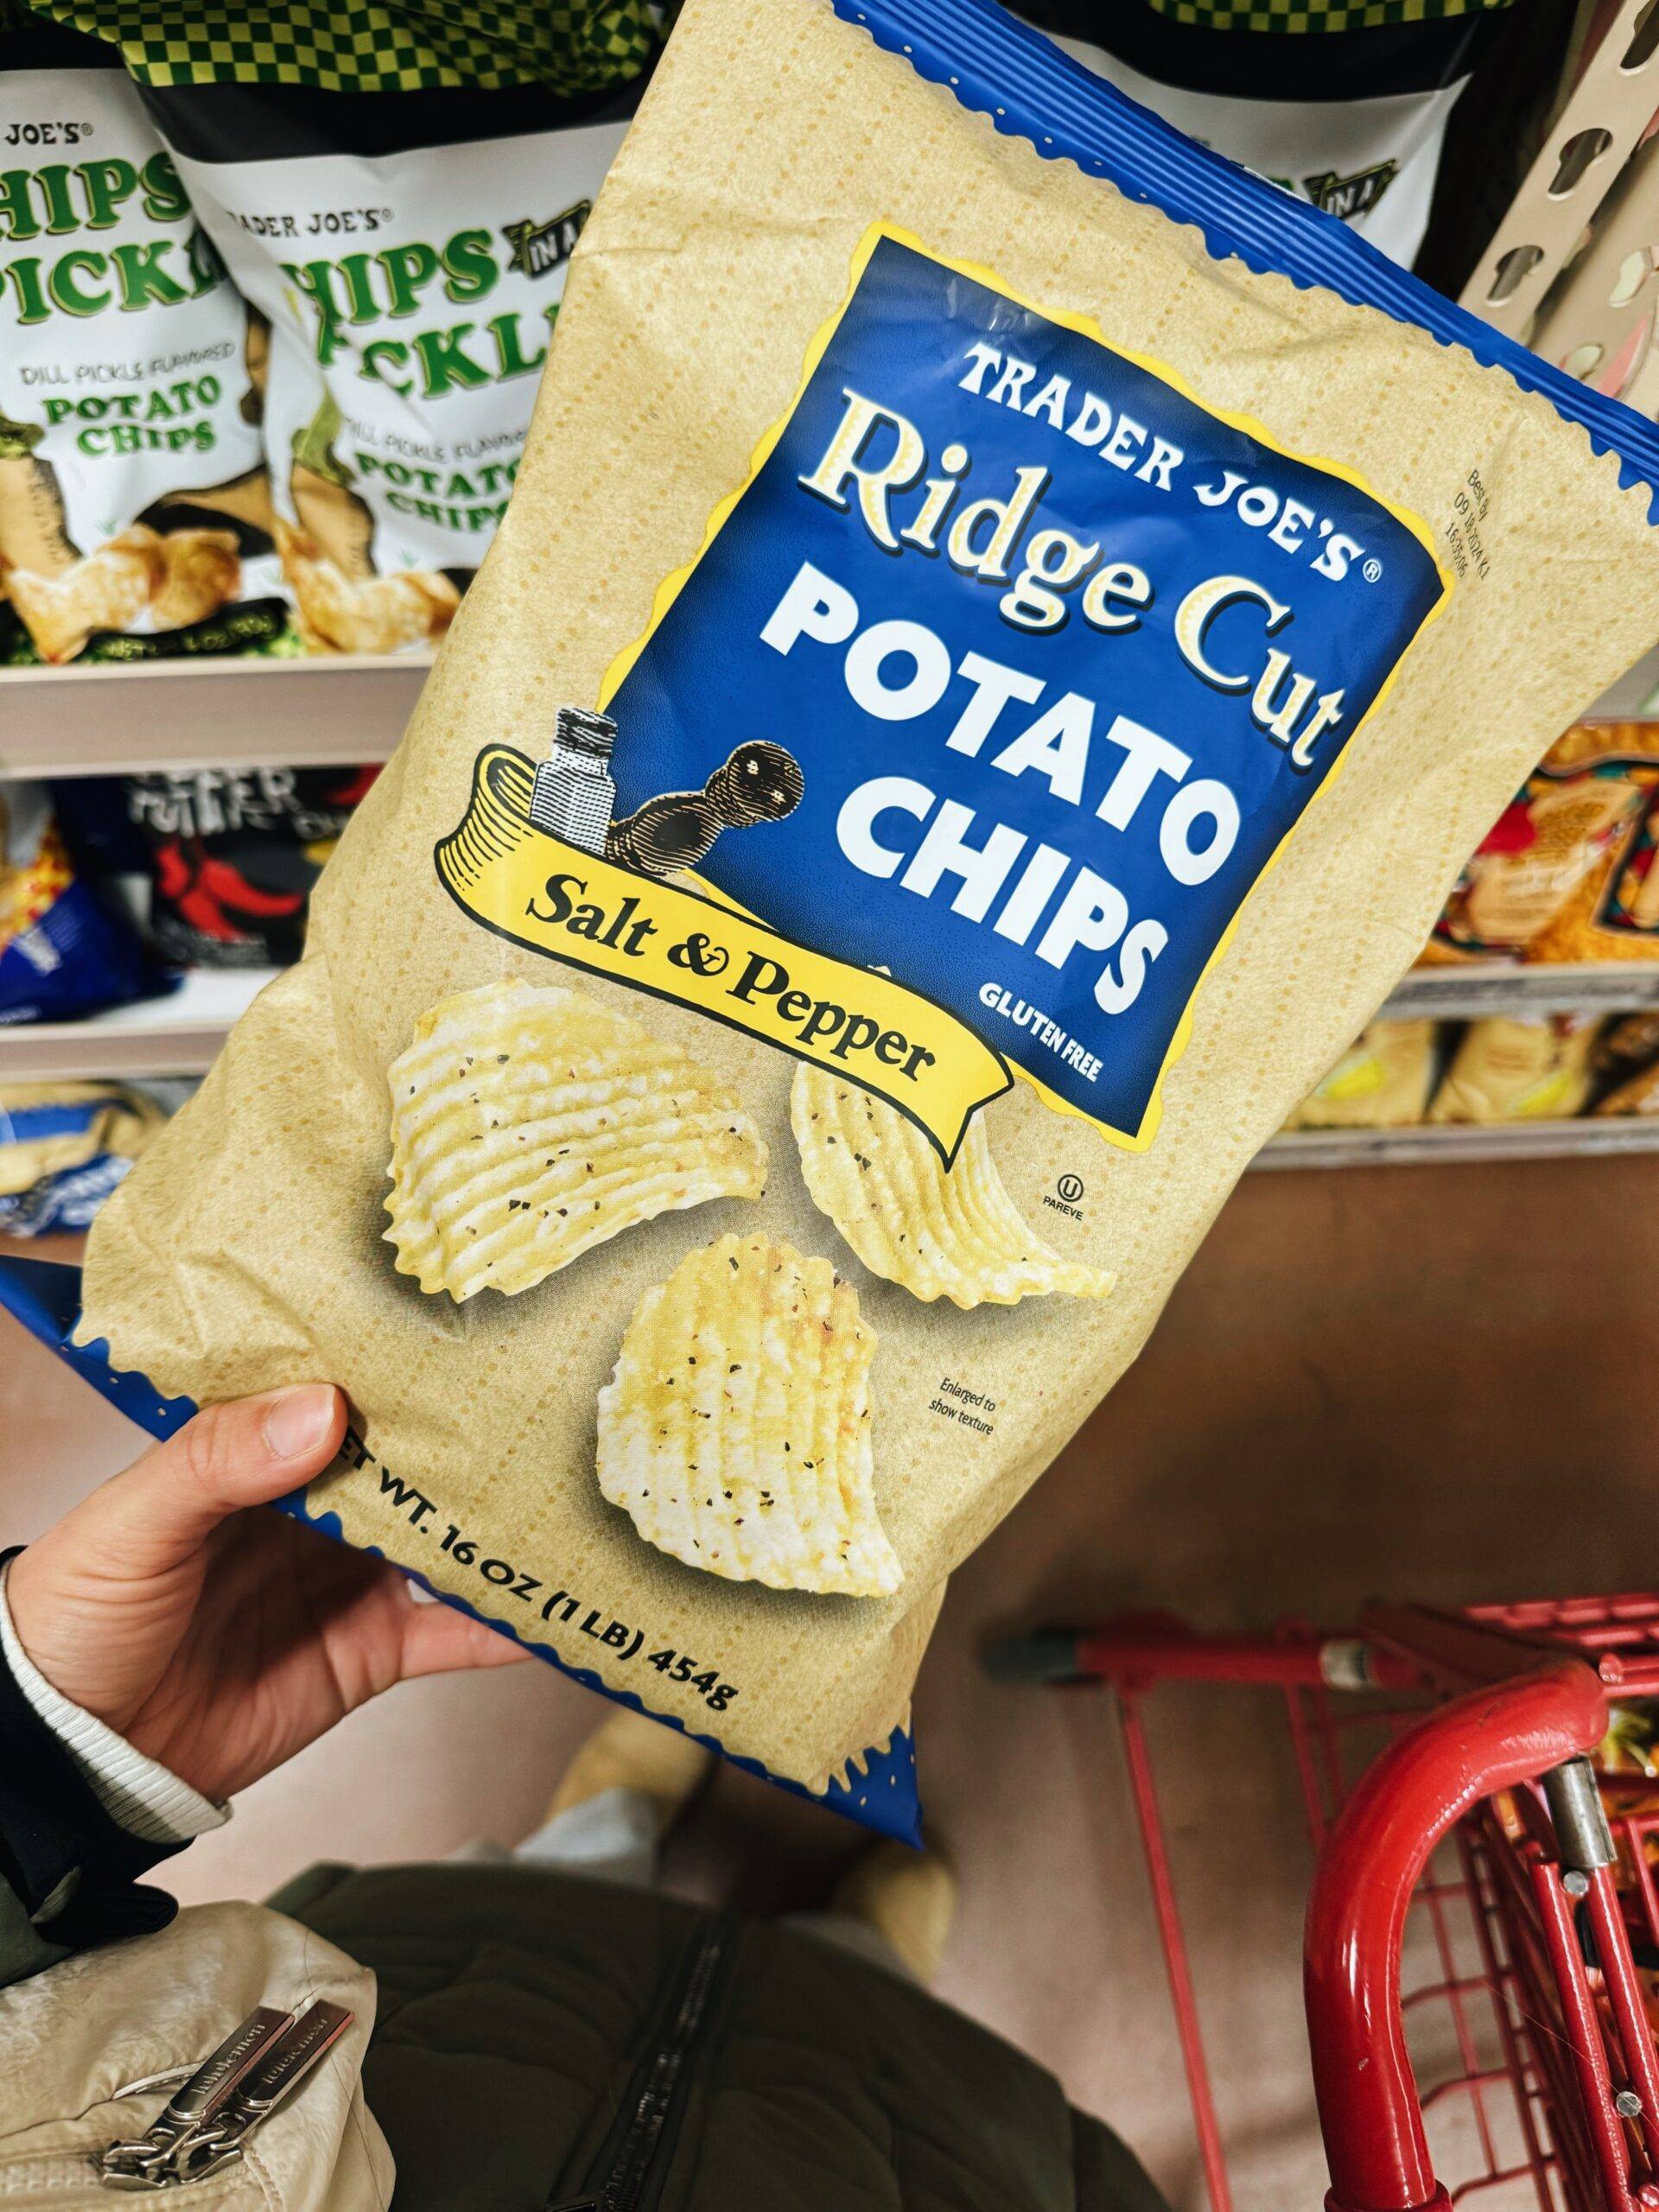 Salt and pepper ridge cut potato chips in a bag.